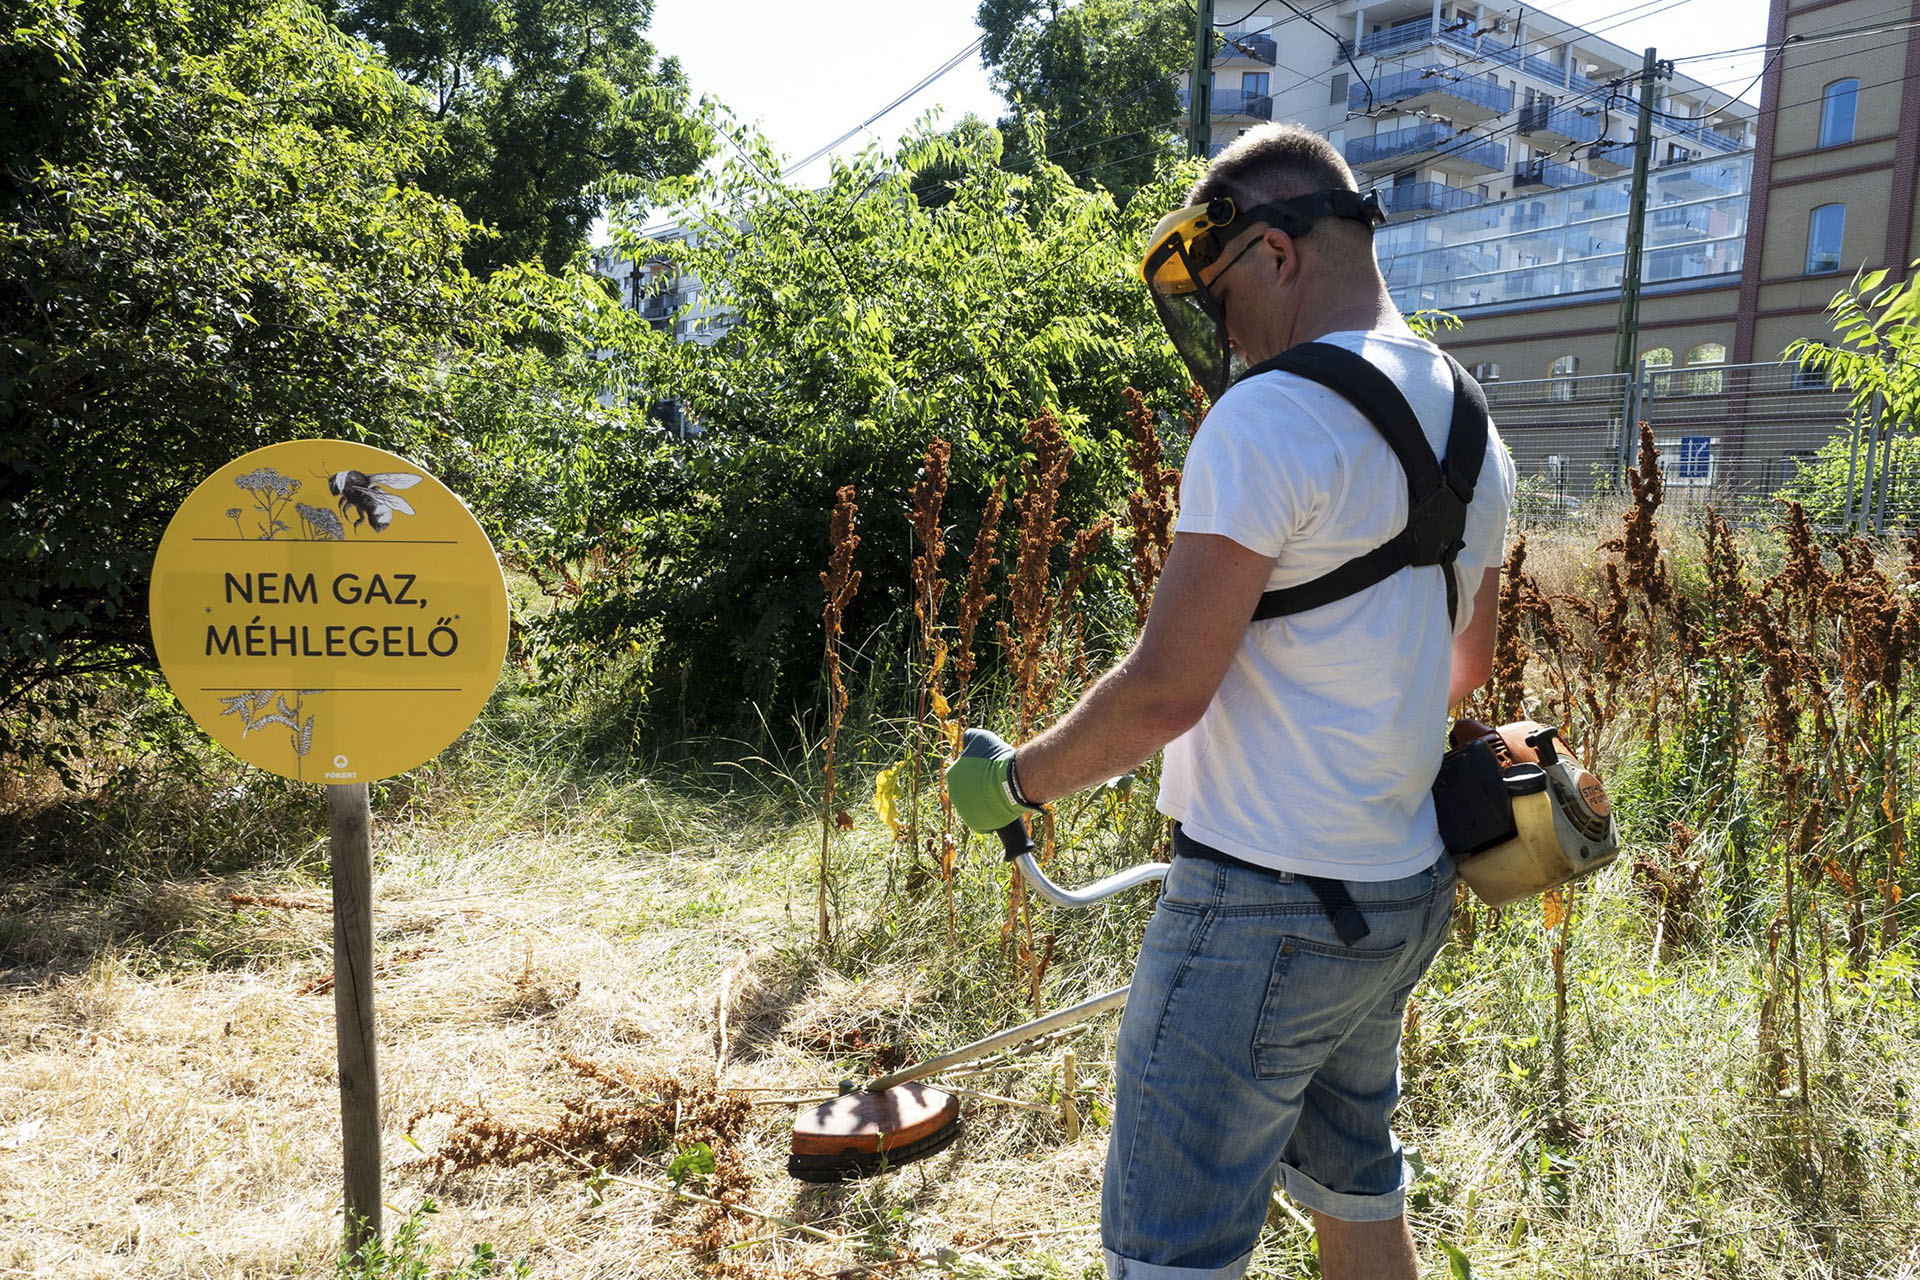 A Főkert szívesen látná önkéntesként a méhlegelőt lekaszáló Fidelitasosokat